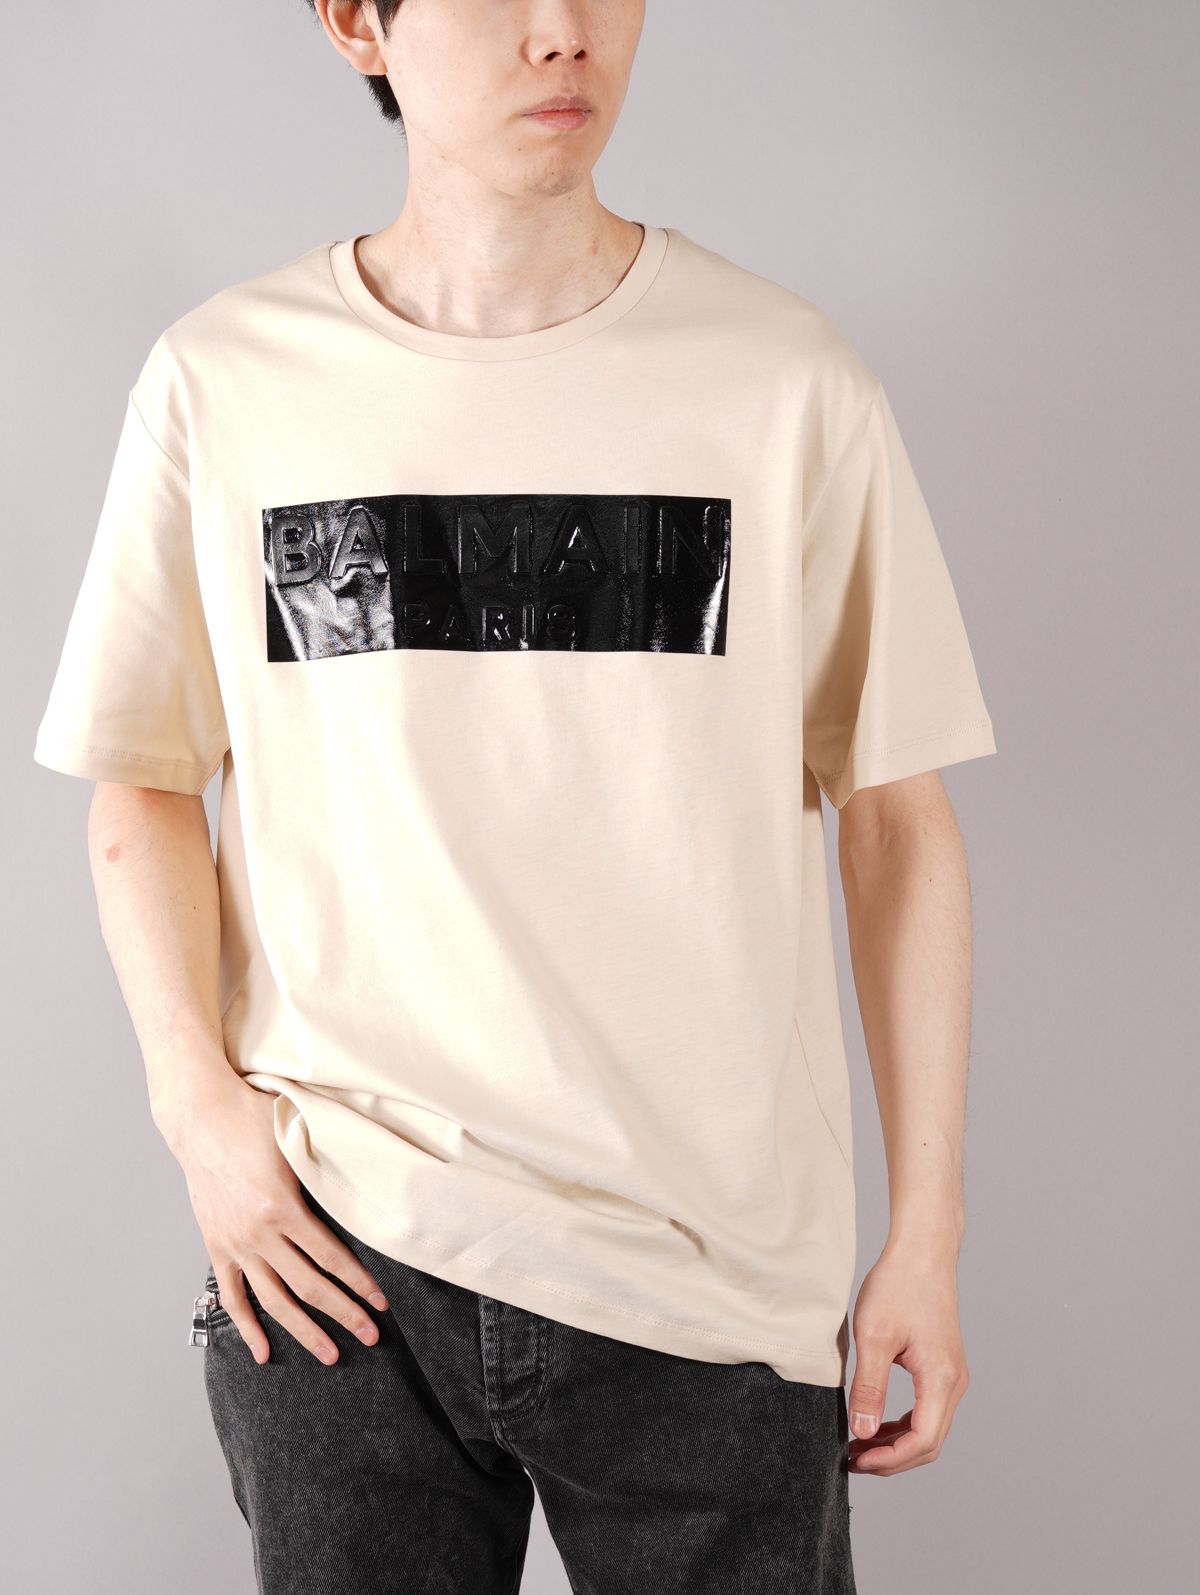 BALMAIN - BALMAIN TAPE T-SHIRT / ロゴ テープ Tシャツ